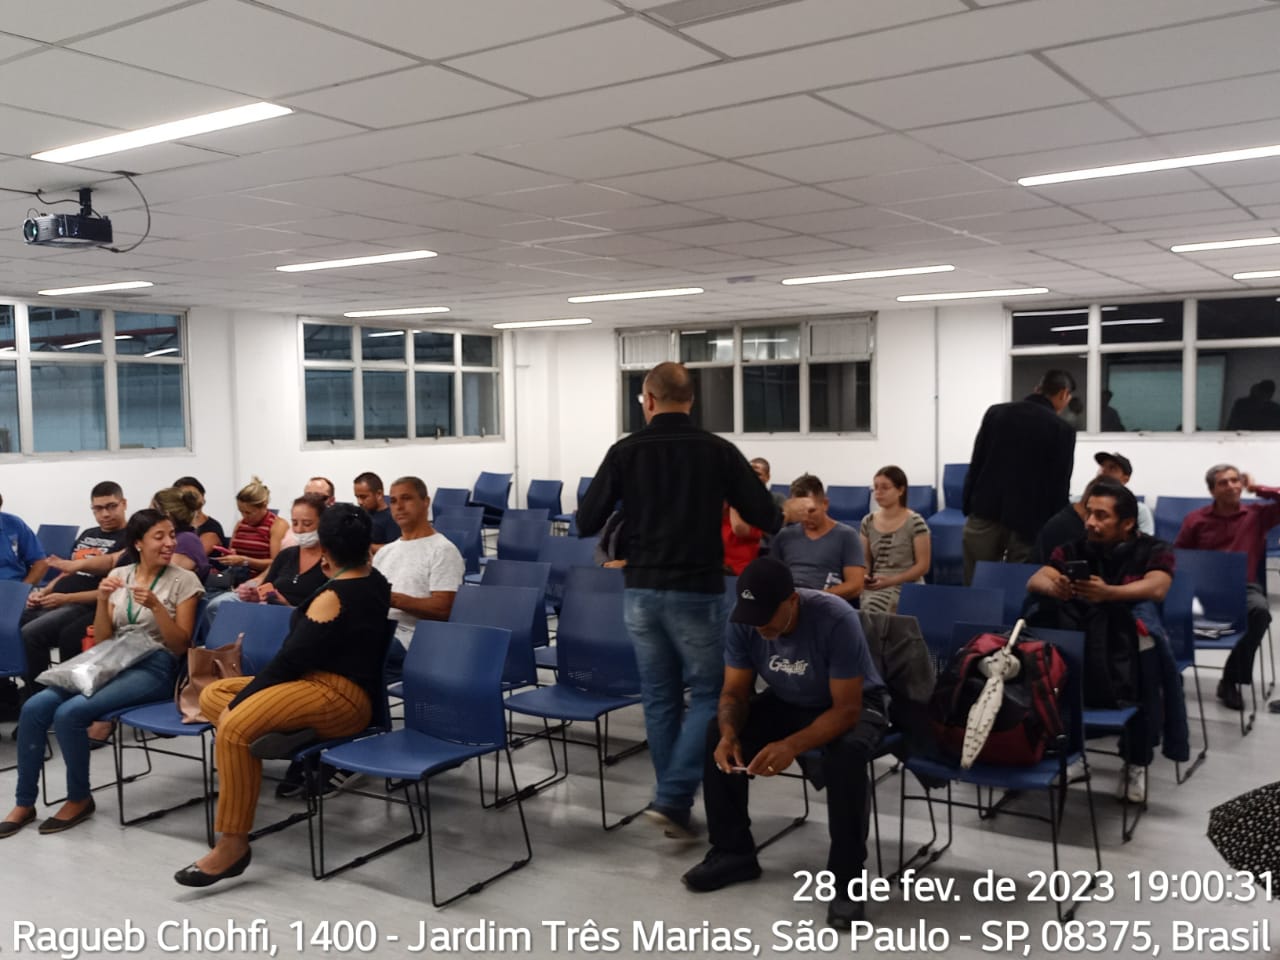 Participantes de reunião estão sentados em cadeiras azuis em um salão. Foto identificada com data de 28 de fevereiro,  Av. Ragueb Chohfi, 1.400